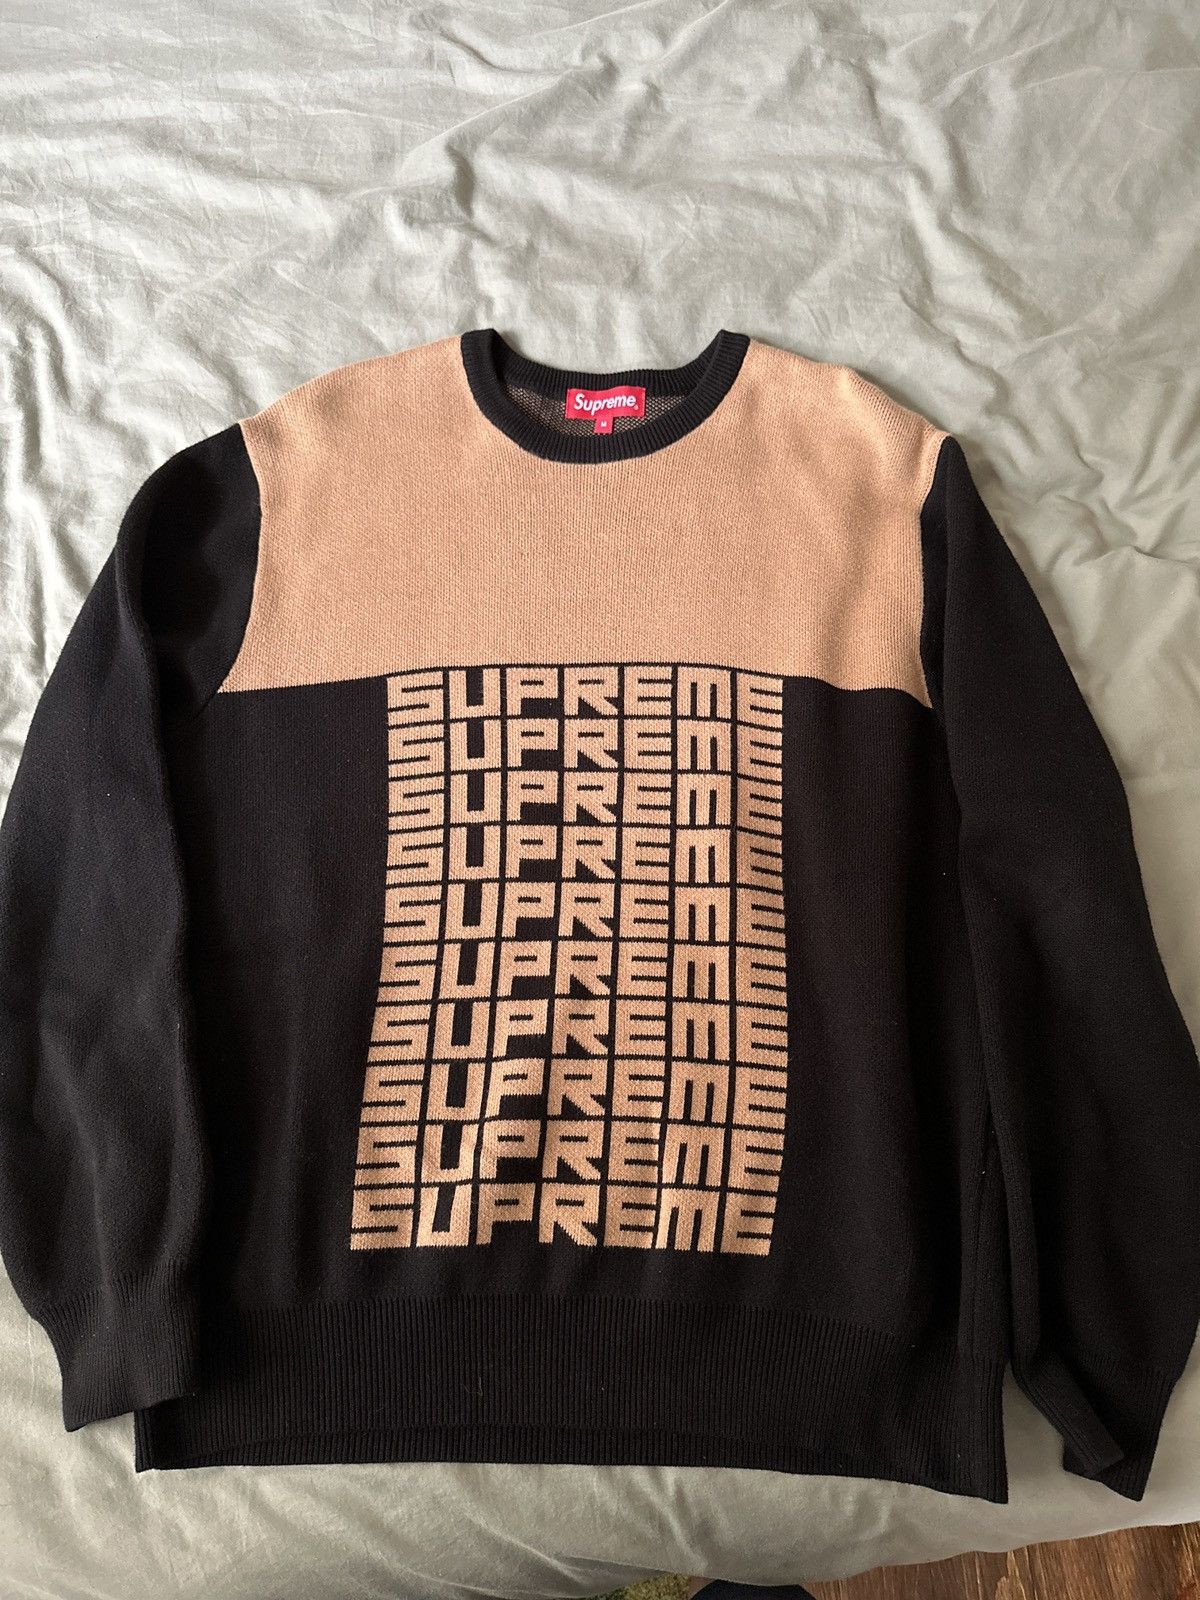 Supreme Logo Repeat Sweater | Grailed